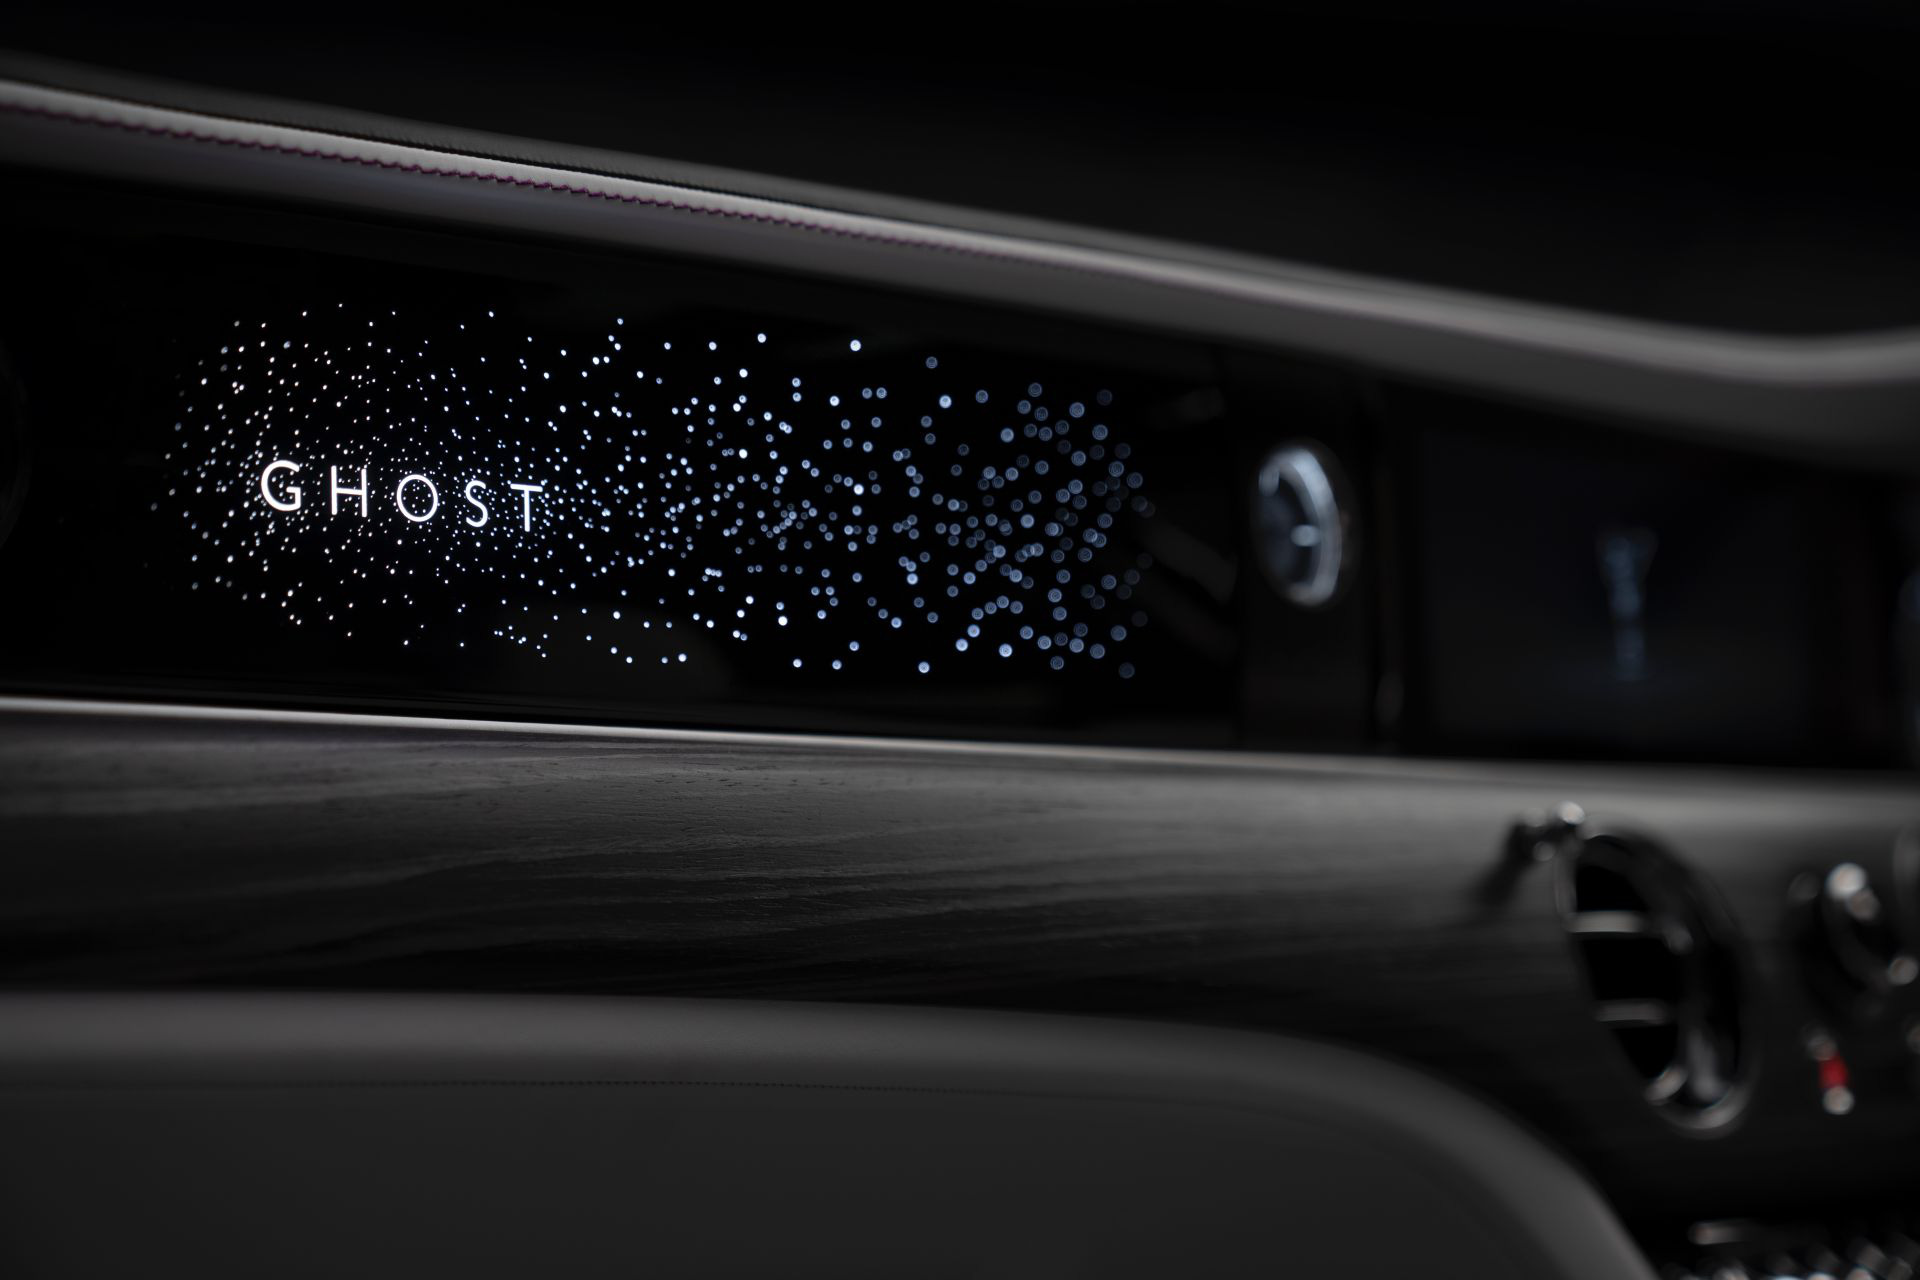 Rolls-Royce Ghost thế hệ mới lộ chi tiết bầu trời sao mini lạ với 90.000 ngôi sao lấp lánh